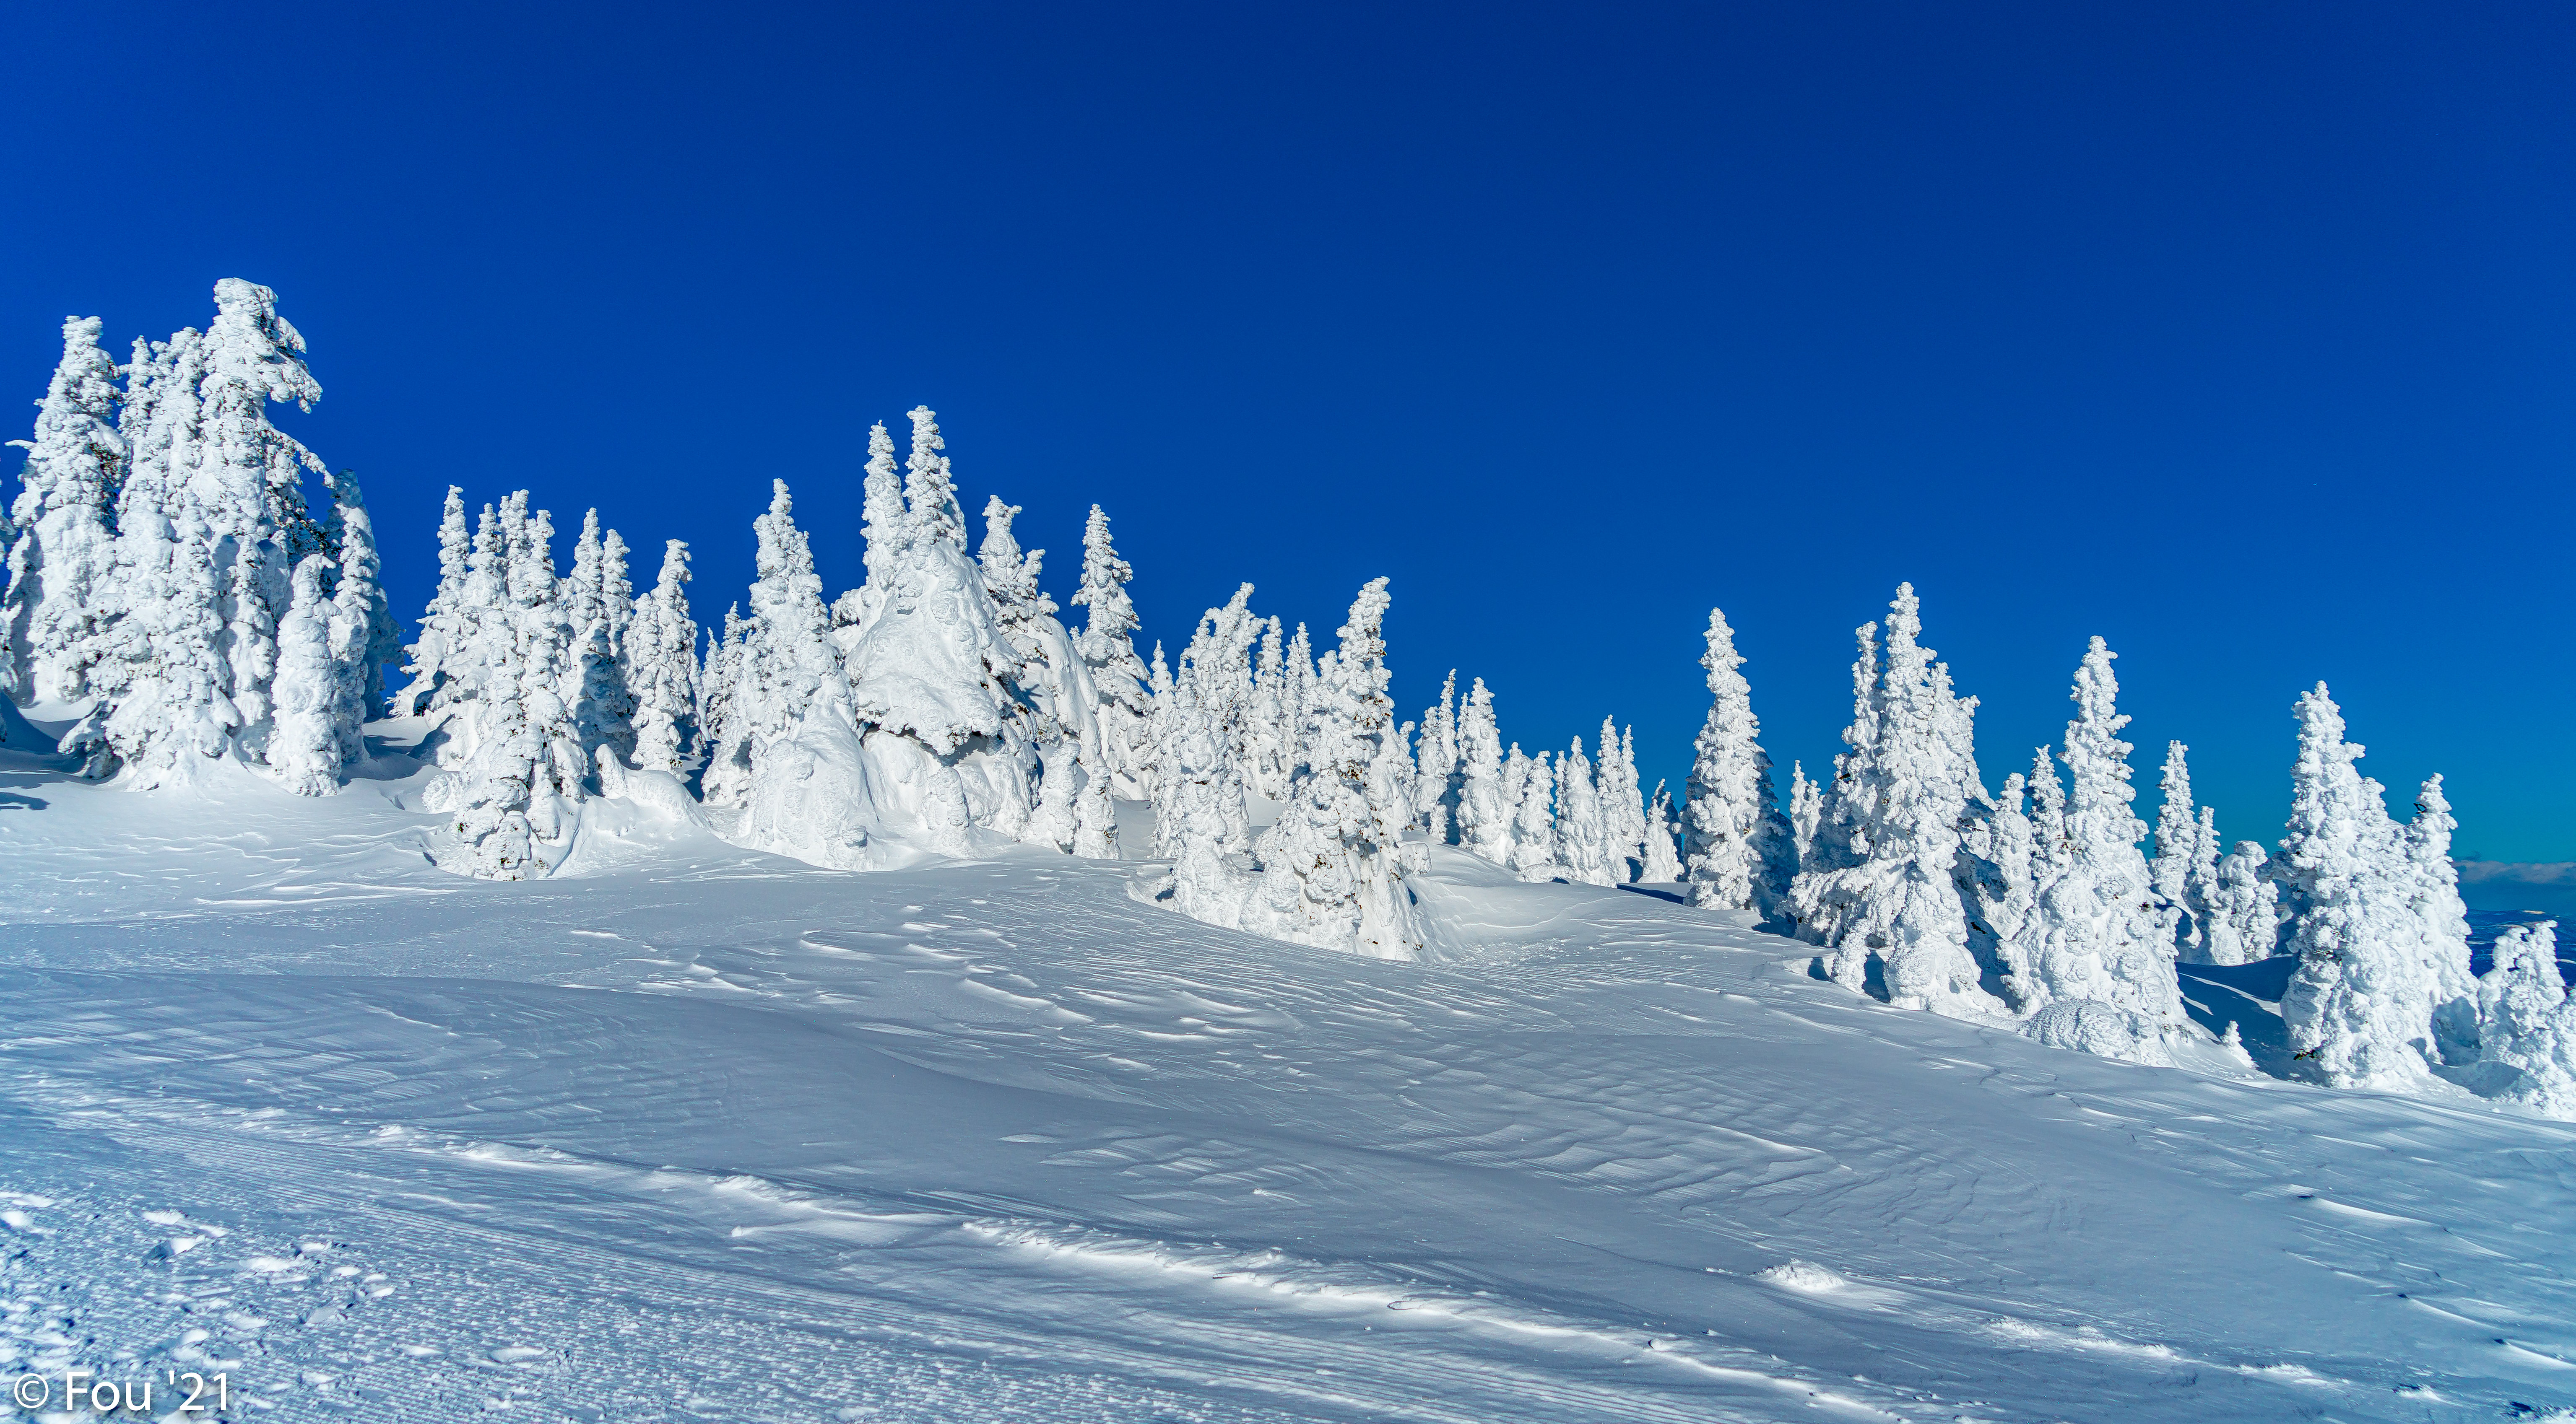 Скачать обои бесплатно Снег, Природа, Елки, Зима, Пейзаж картинка на рабочий стол ПК